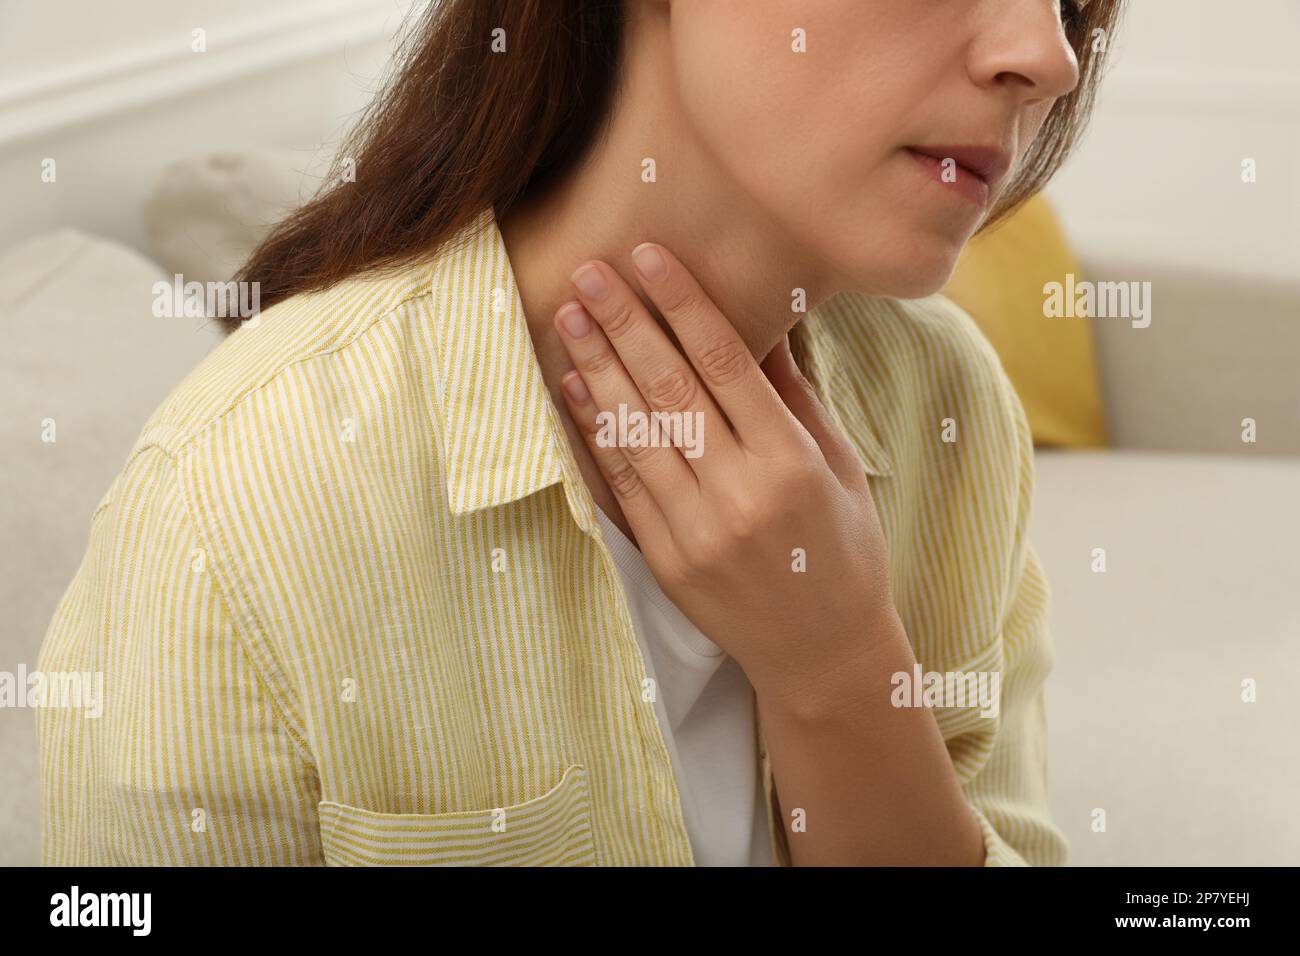 Mature woman doing thyroid self examination indoors, closeup Stock Photo